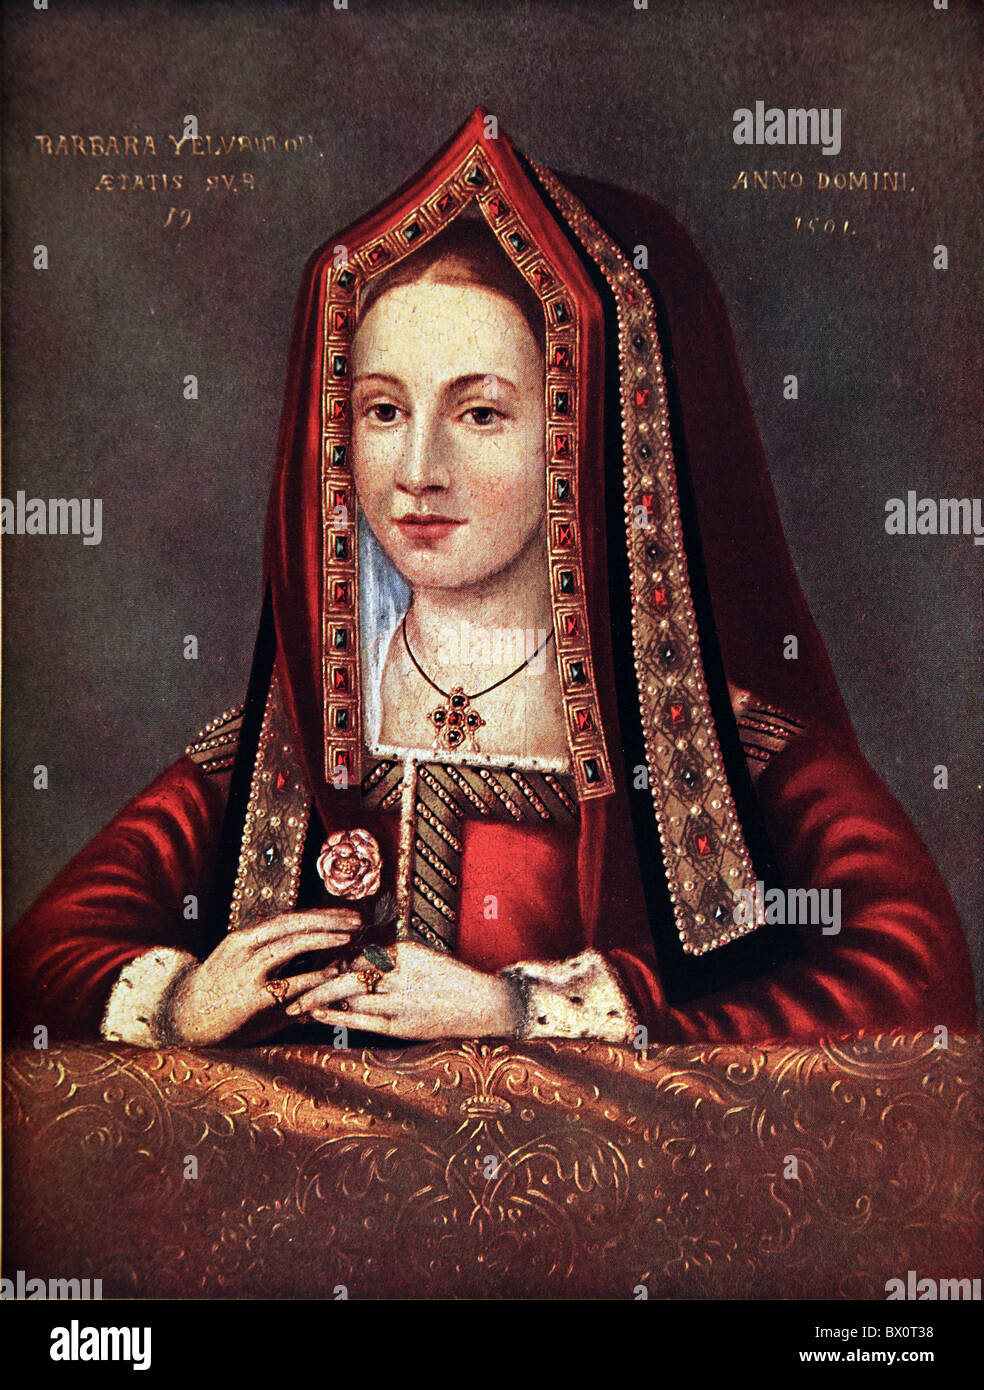 Portrait de Barbara Yelverton âgés de 19 ans, 1501 Banque D'Images